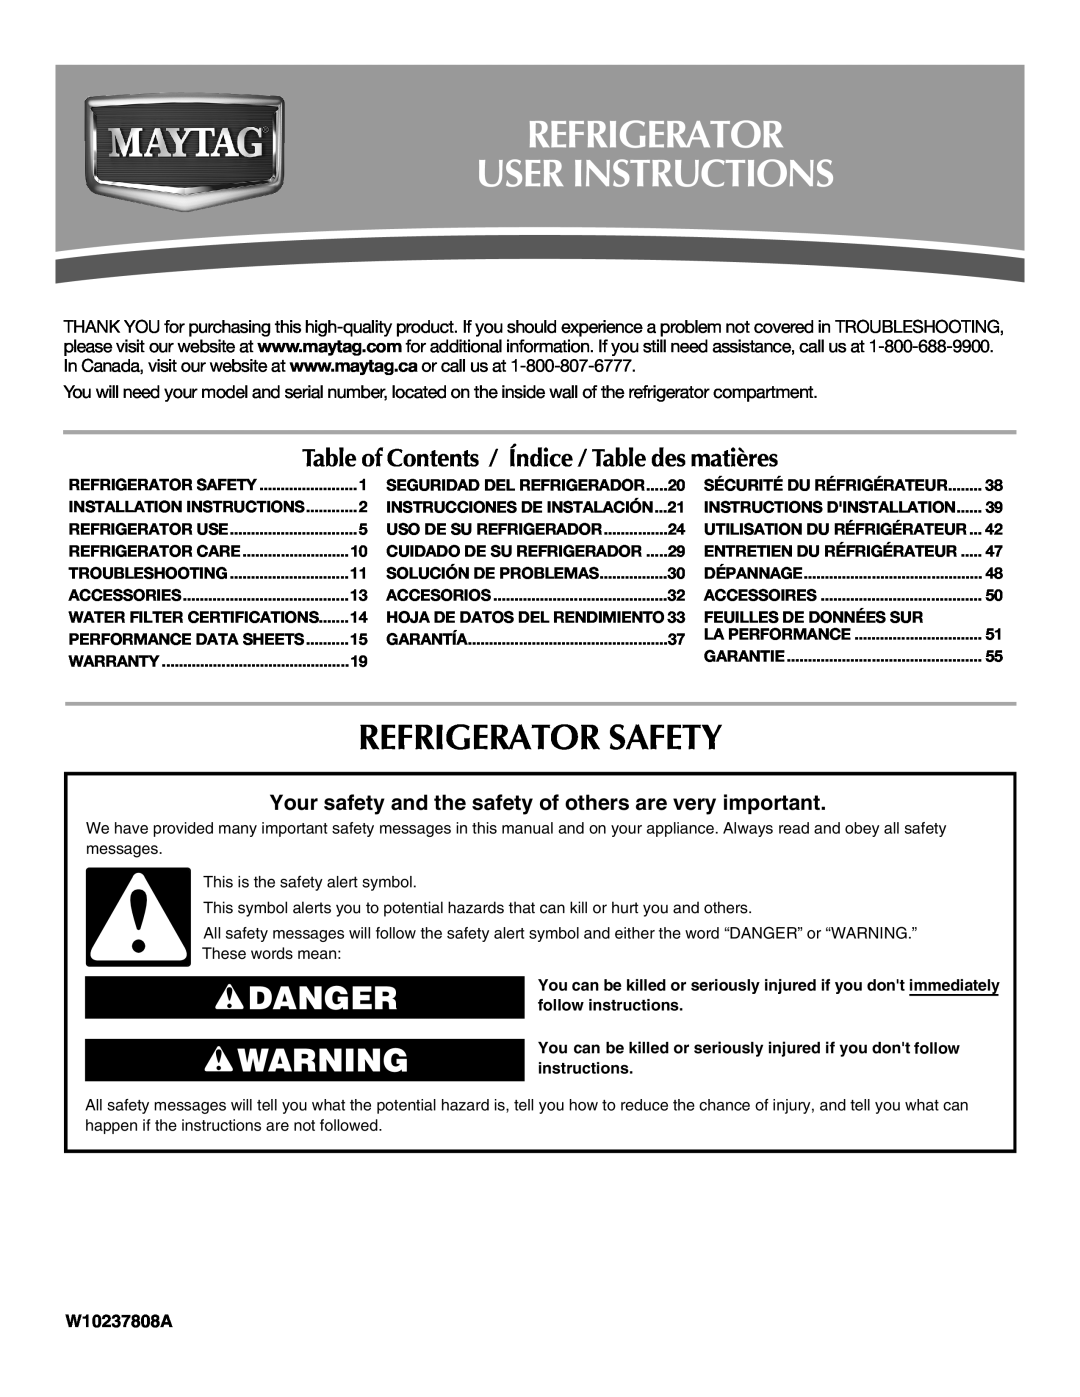 Maytag W10237808A, W10216897A installation instructions Refrigerator User Instructions, Refrigerator Safety, Danger 